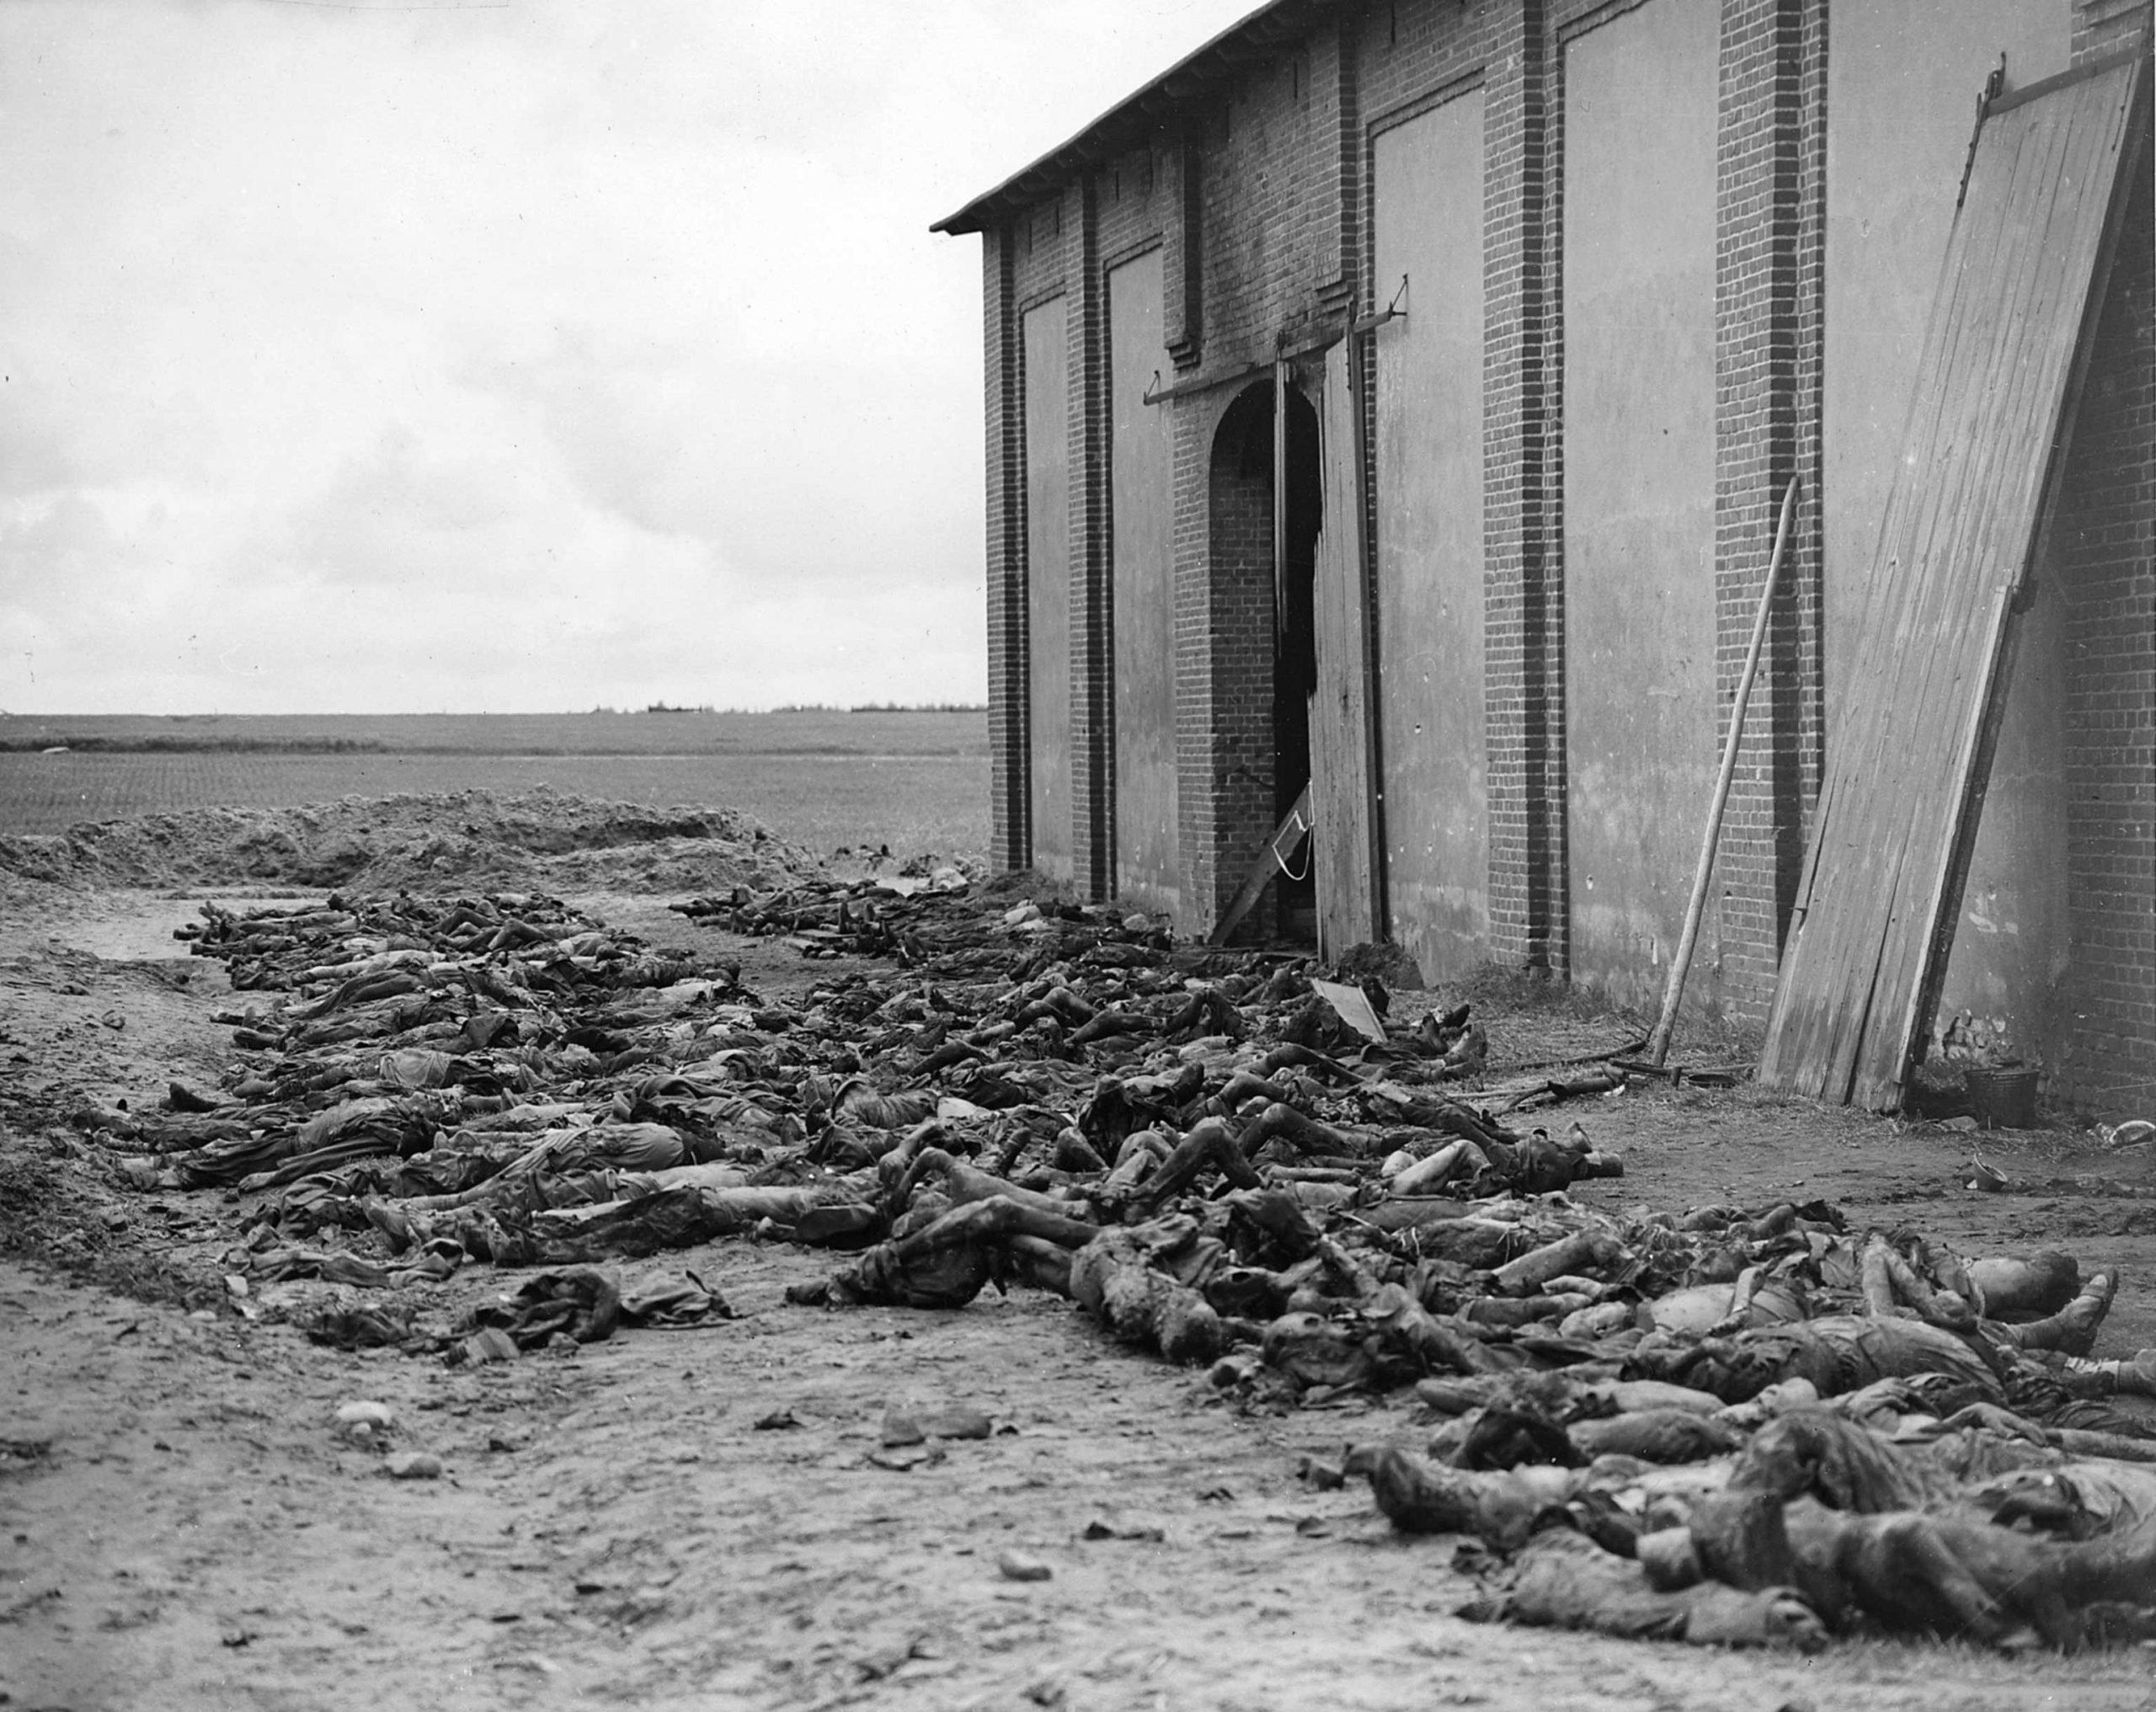 Gardelegen concentration camp